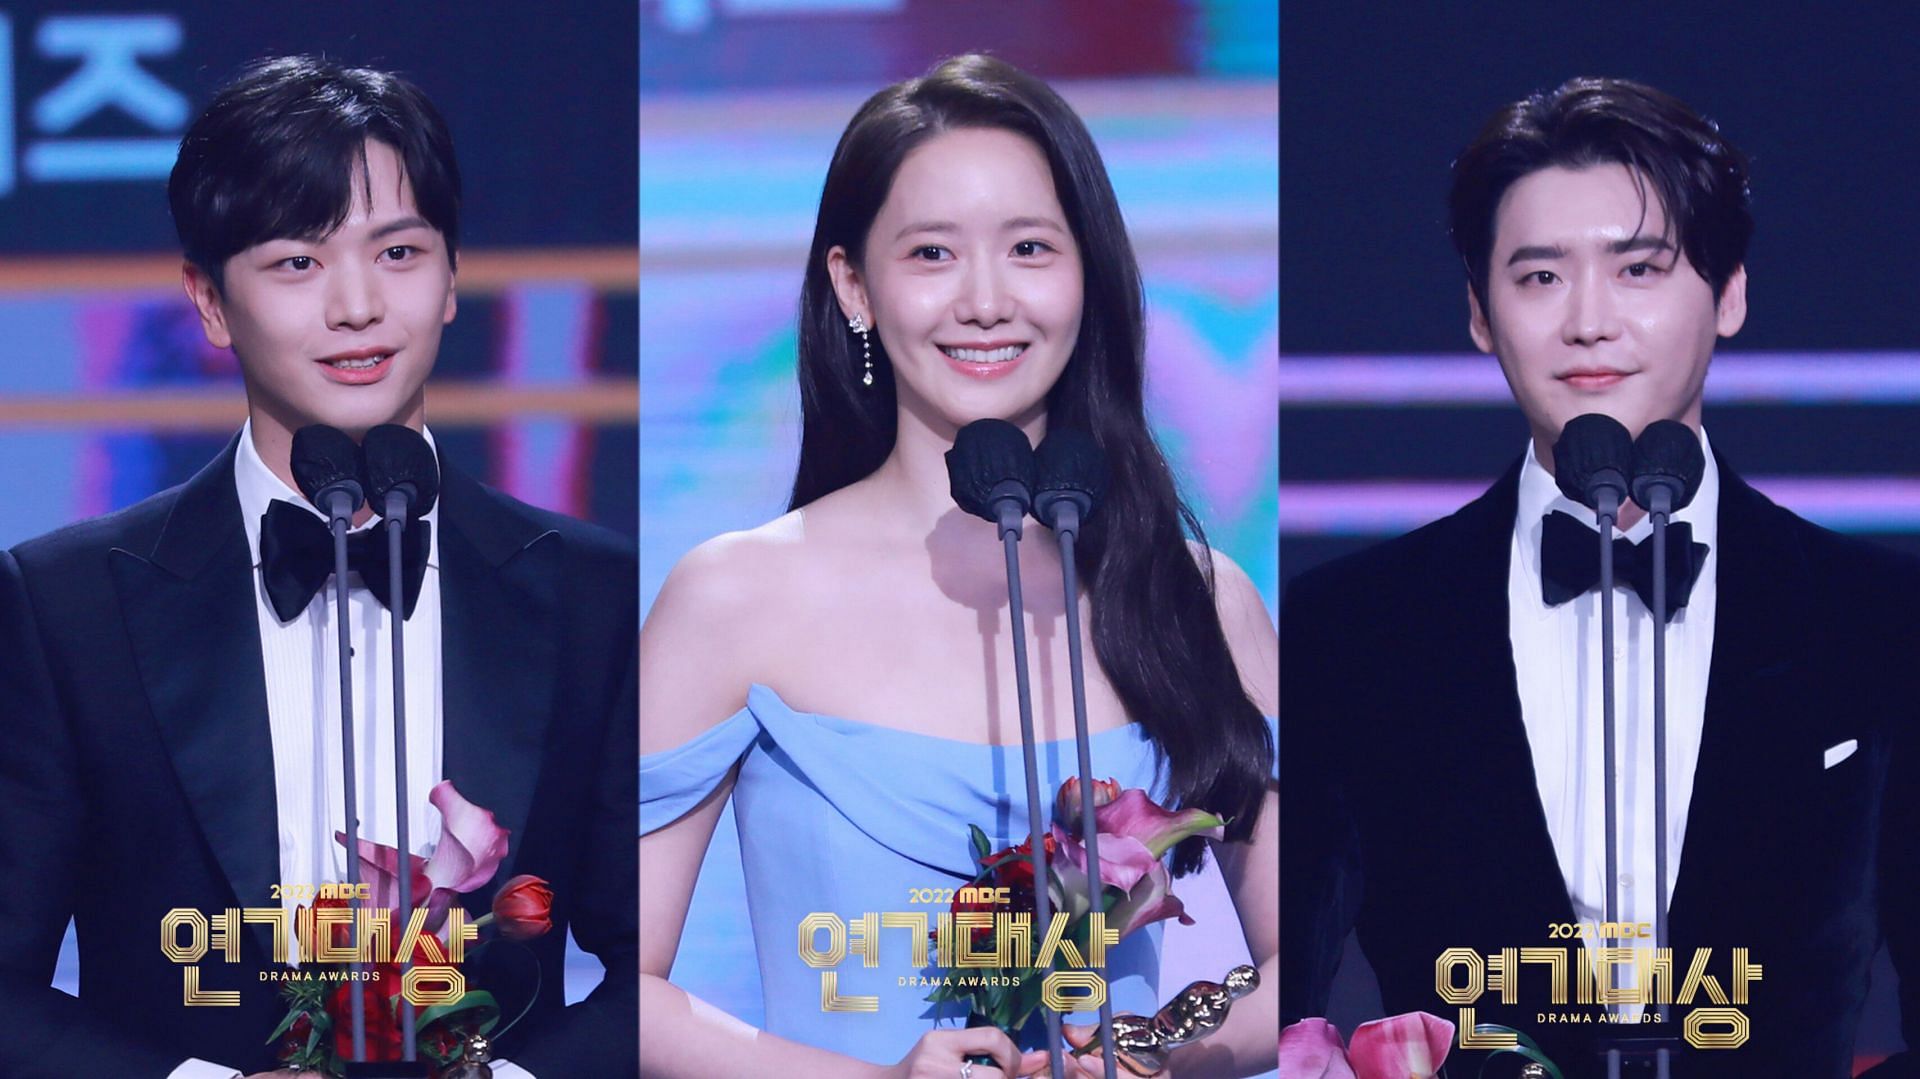 Lee Jongsuk MBC Drama Awards 2022 winners Lee Jongsuk, Yook Sung